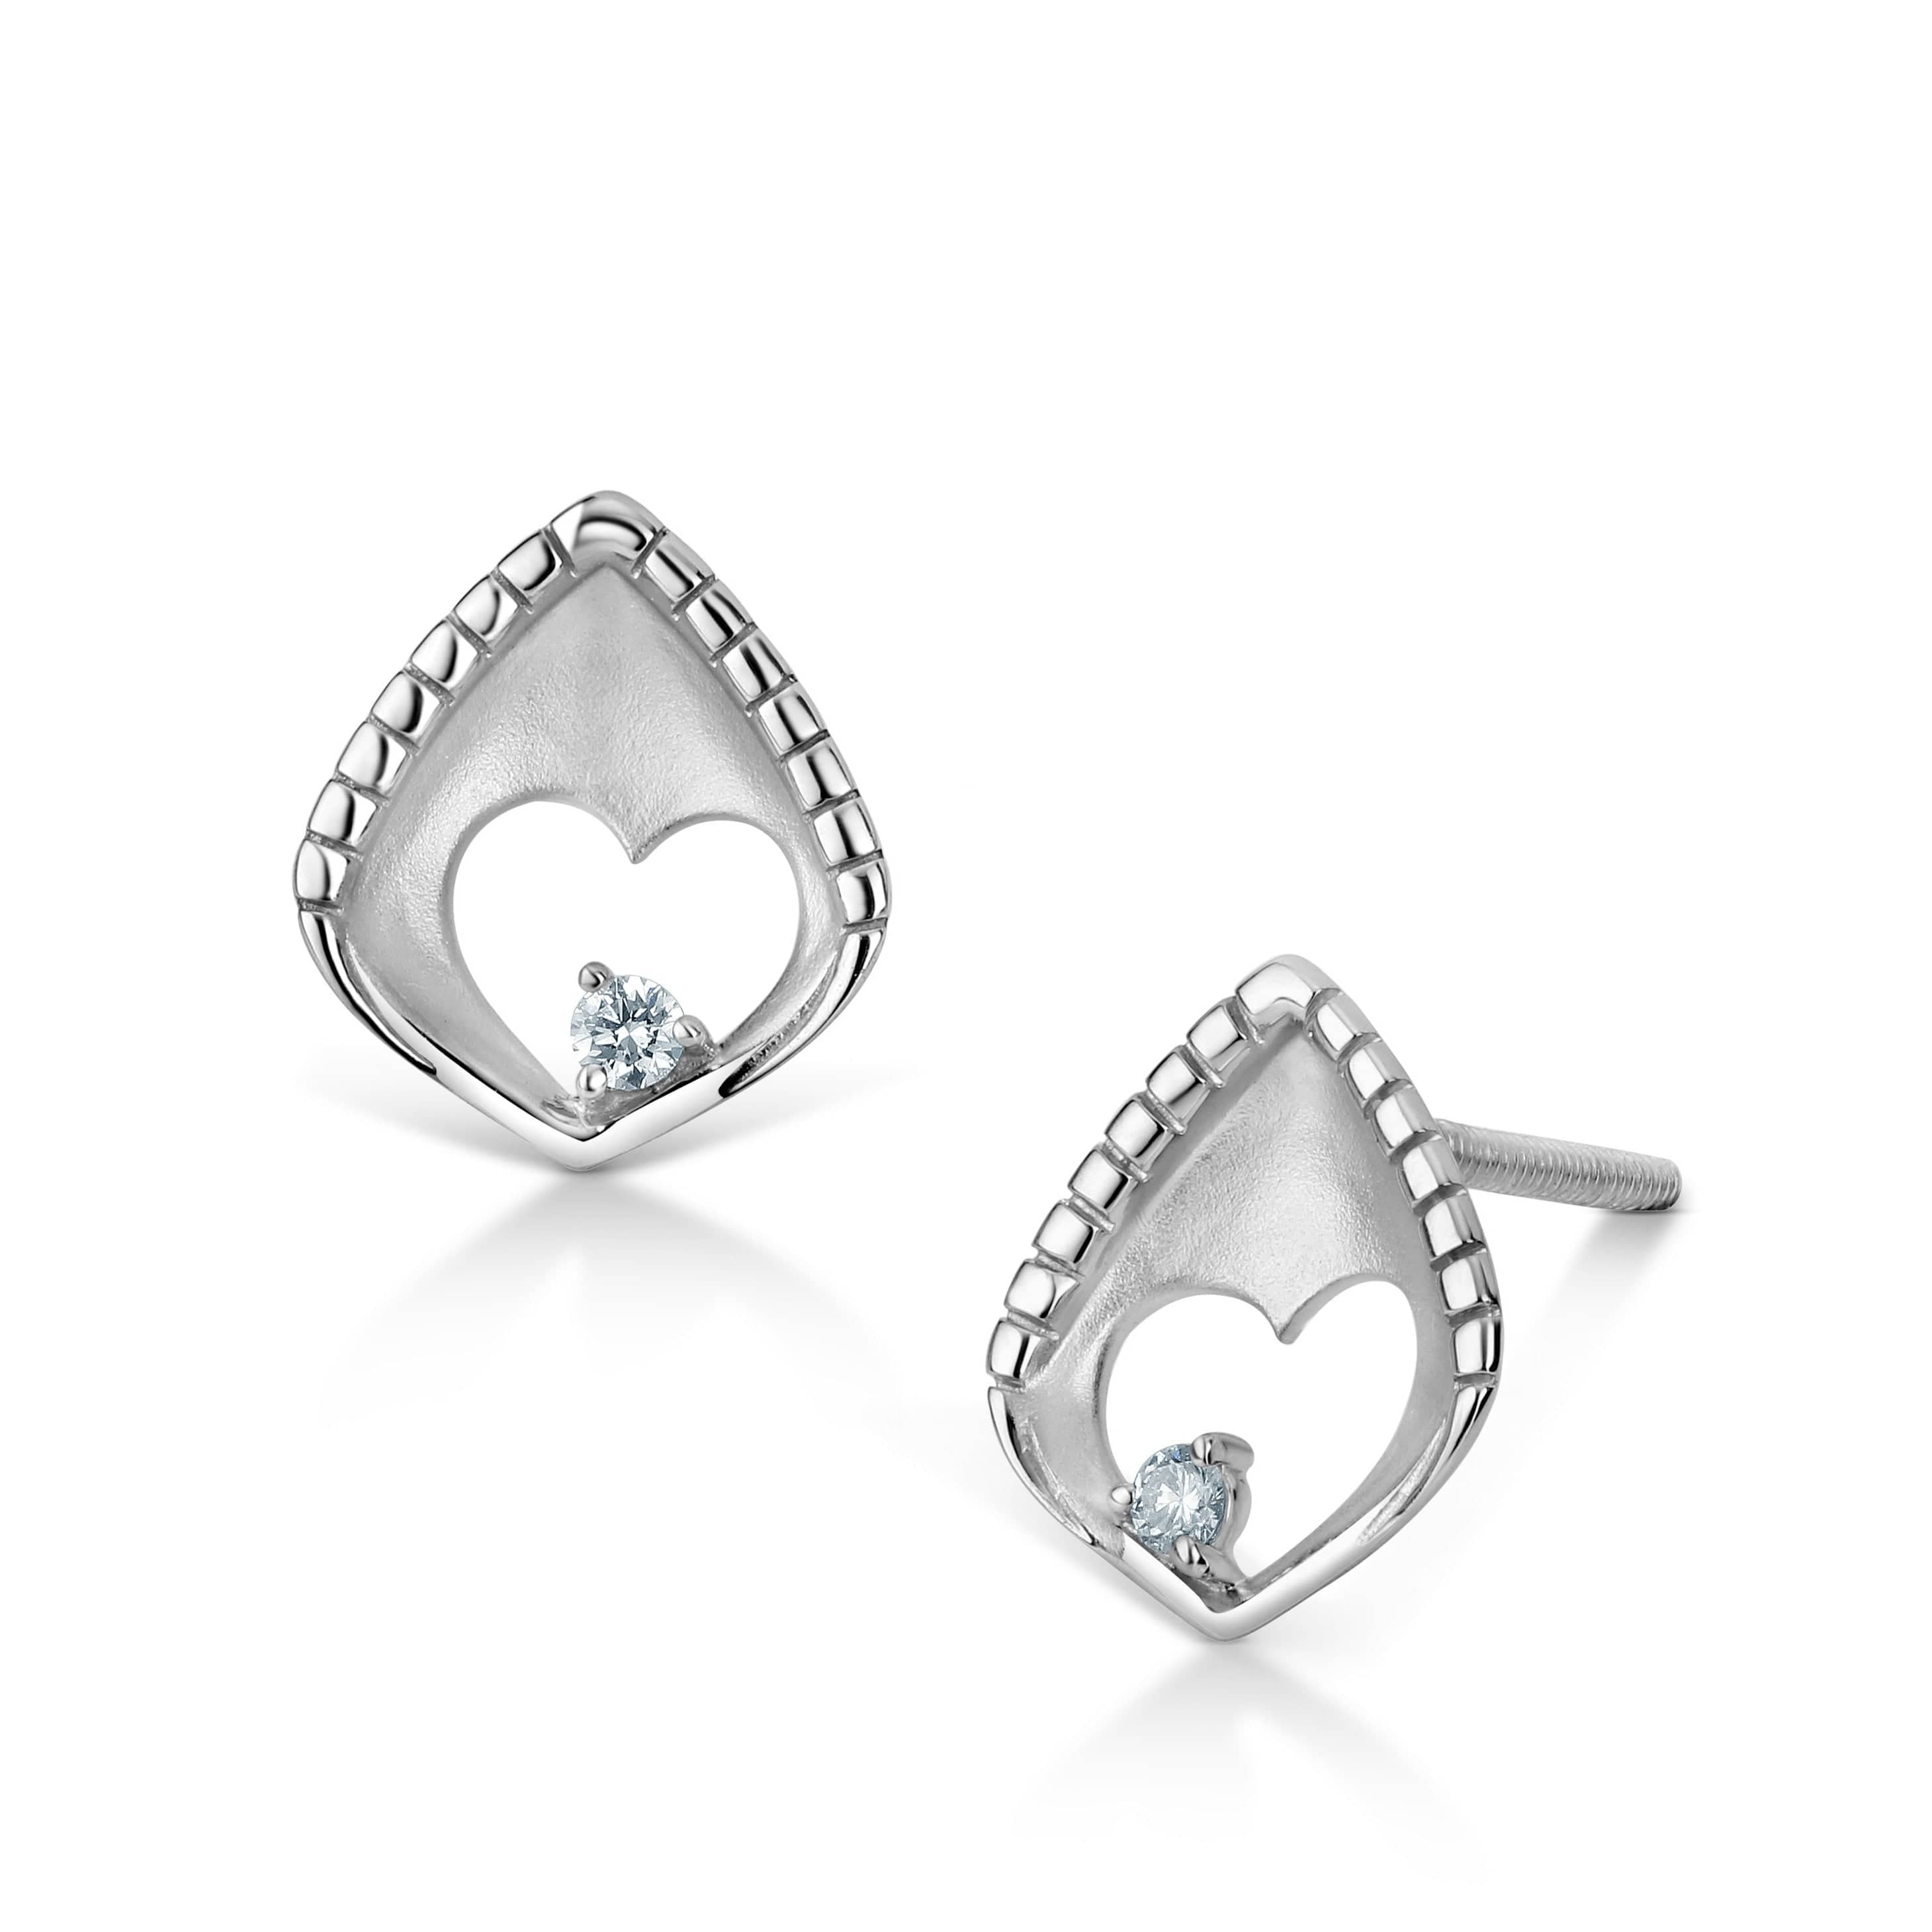 Buy Cute Heart Diamond Earrings Online In India